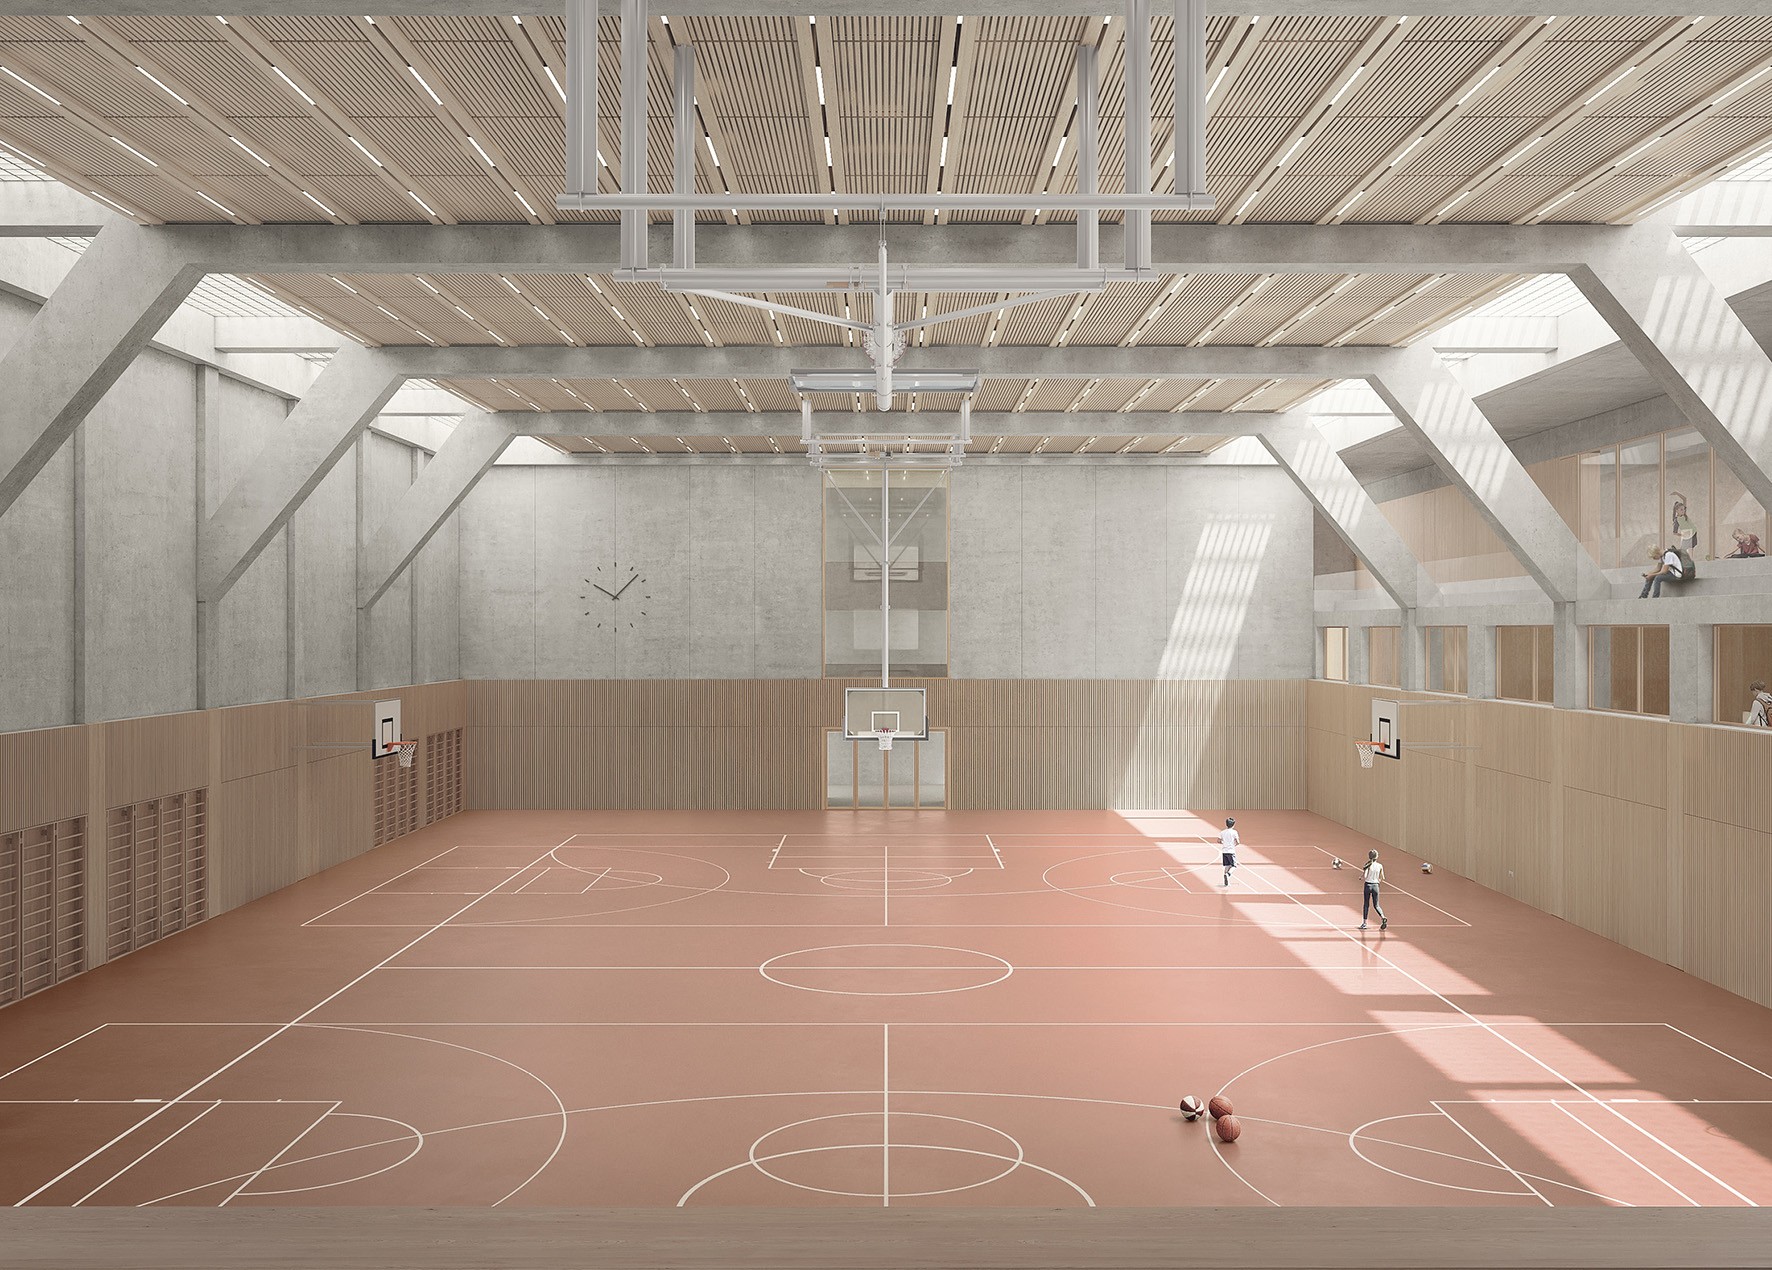 Ersatzneubau der Schulanlage Utogrund Stadt Zürich Doppelsporthalle